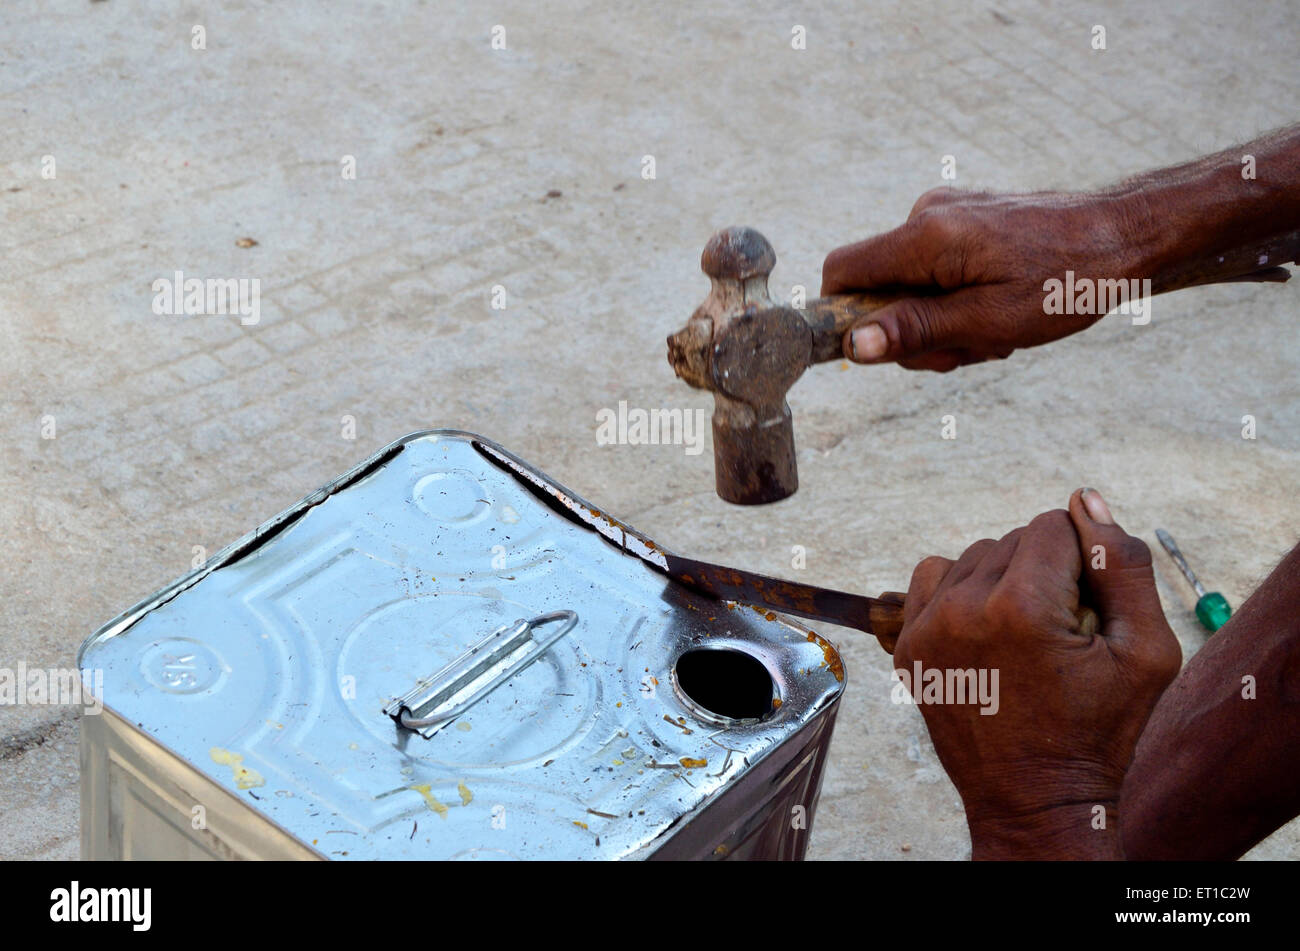 Mann schneiden Blechdose Jodhpur Rajasthan Indien Asien Stockfoto